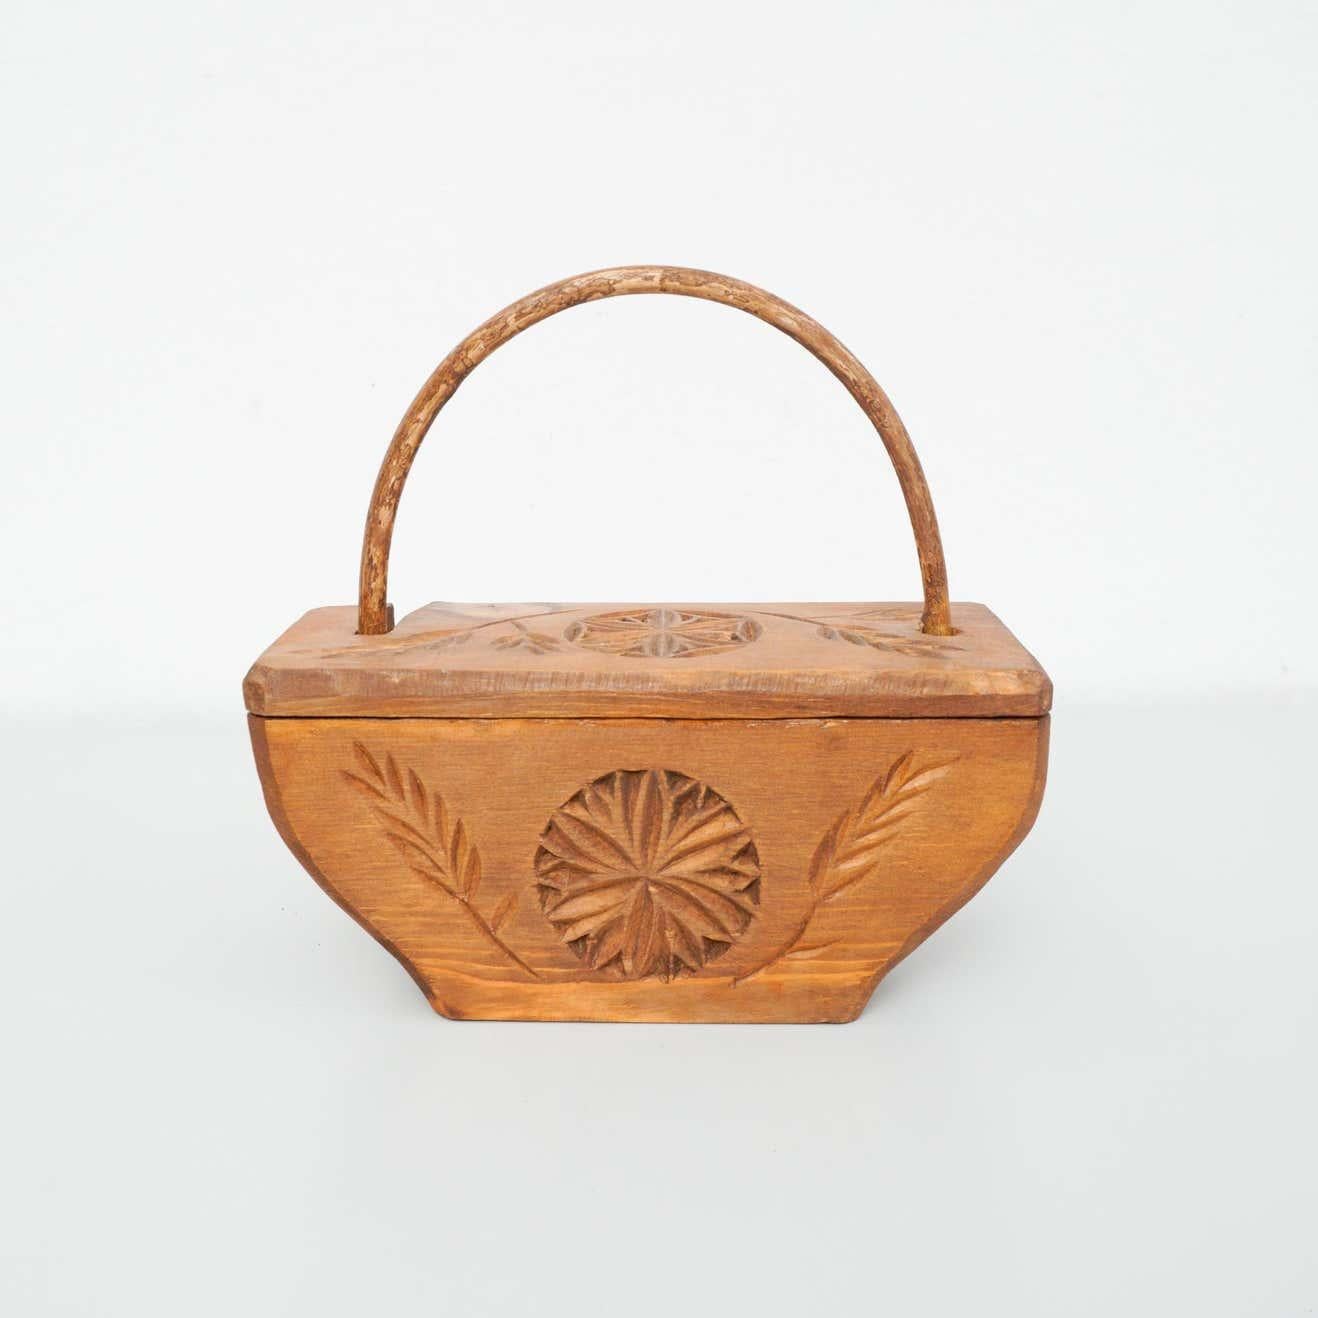 Rustikaler primitiver handgeschnitzter Holzkorb, um 1950

Hergestellt in Frankreich.

In ursprünglichem Zustand mit geringfügigen Gebrauchsspuren, die dem Alter und dem Gebrauch entsprechen.